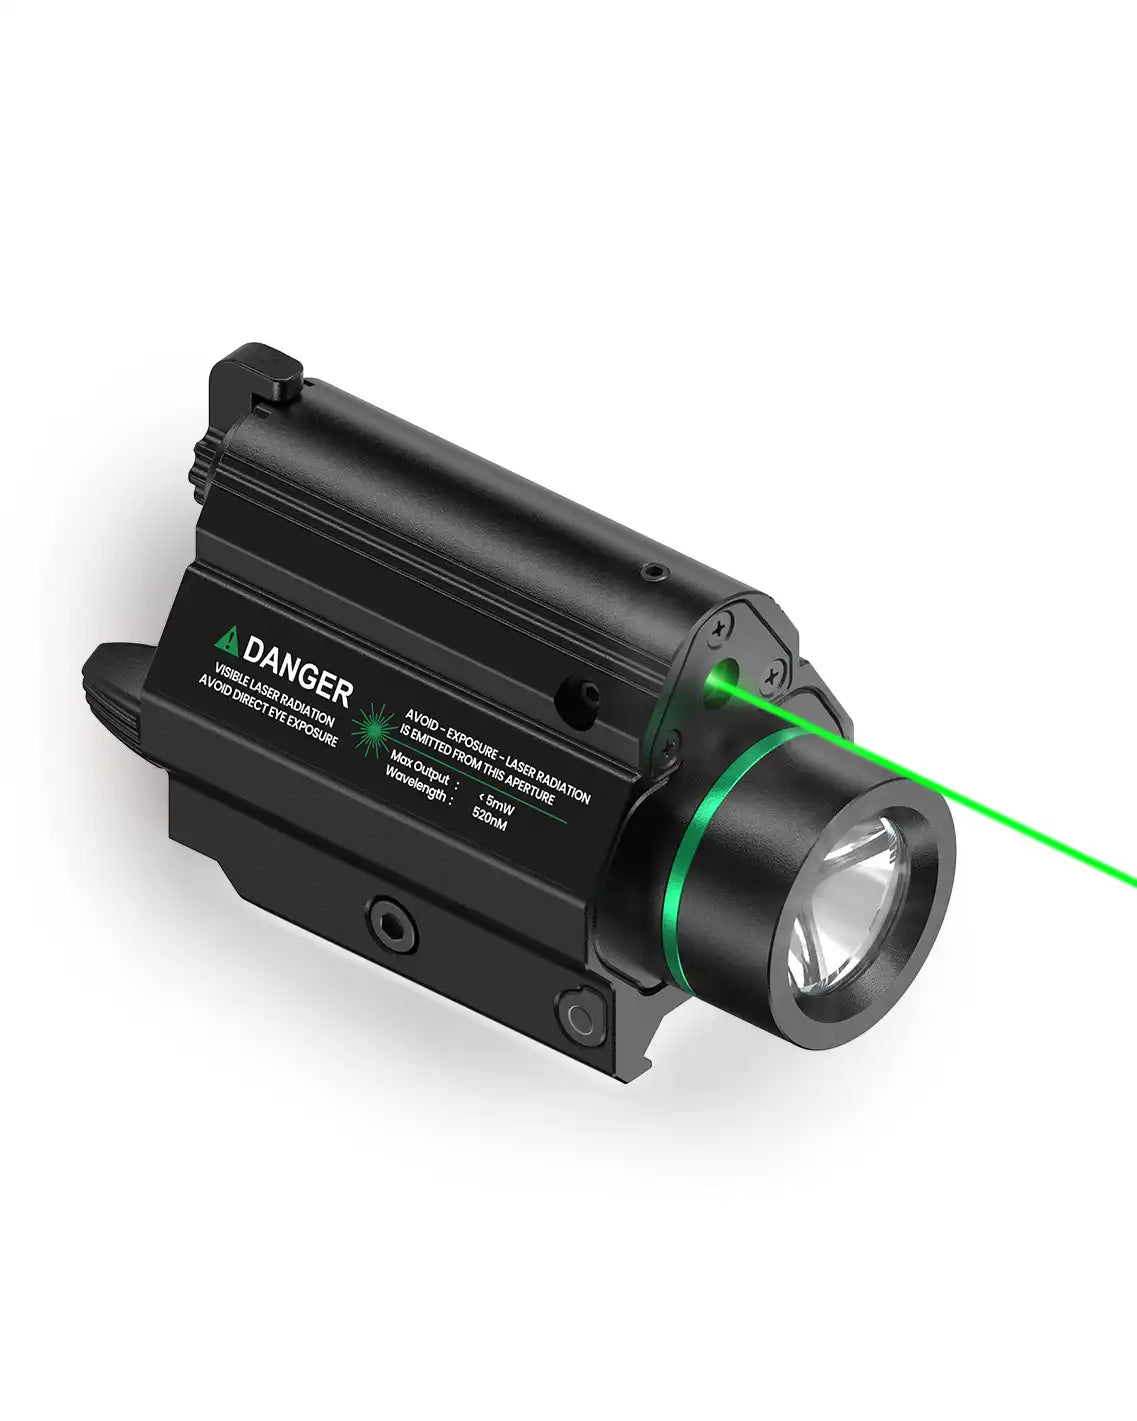 Feyachi LF-68 Combo de lumière laser verte – 1000 lumens tactiques